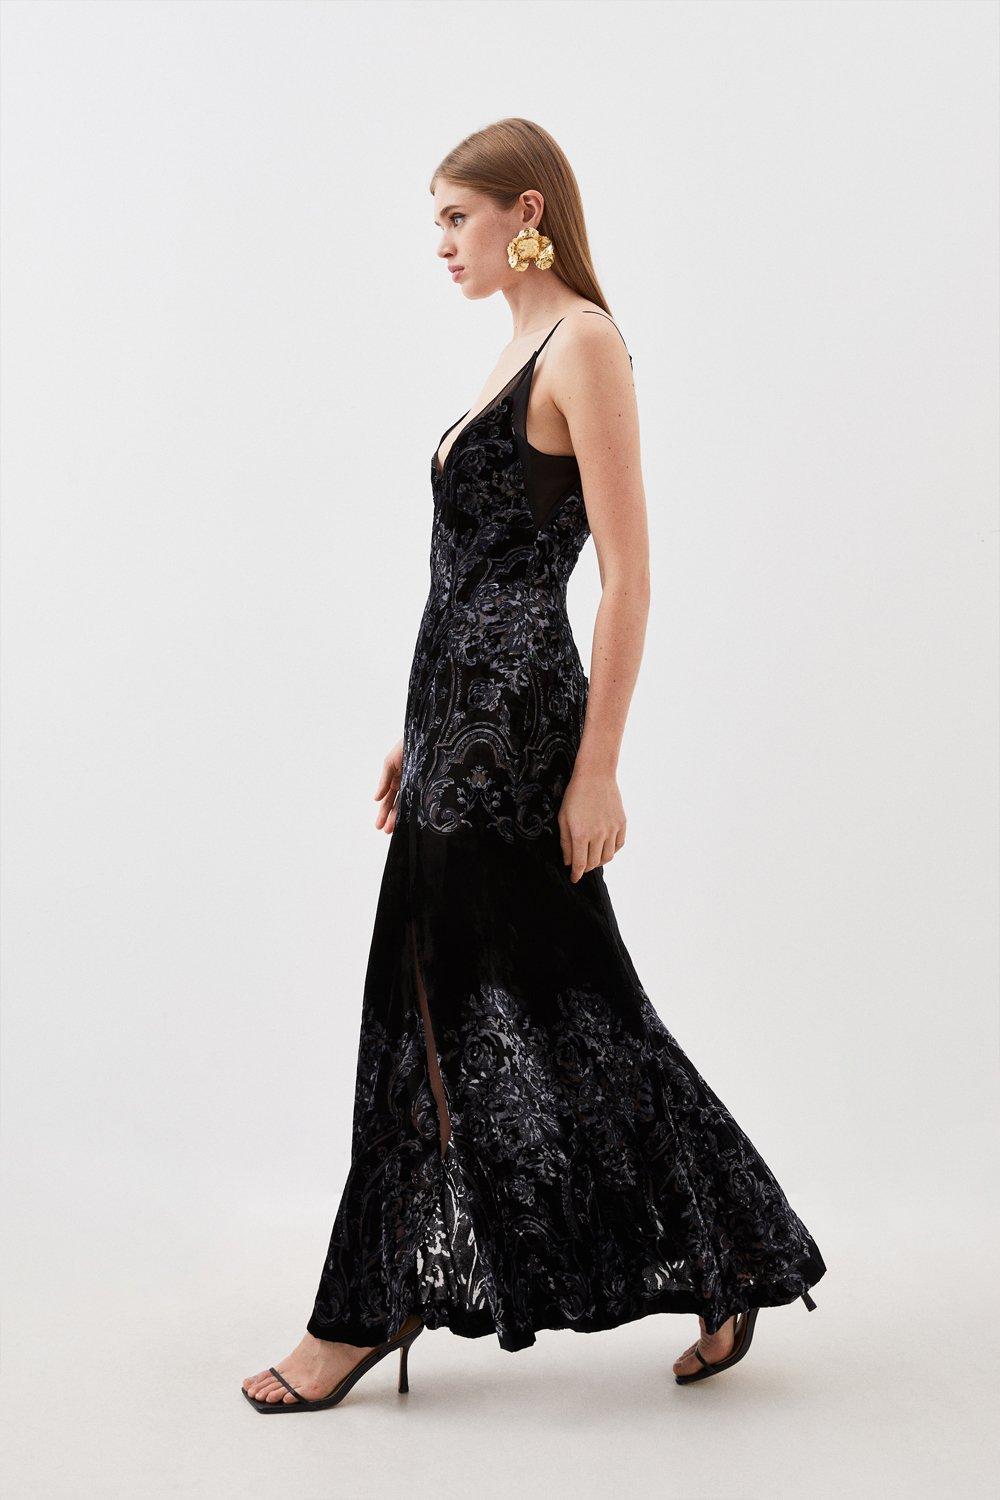 Lace Dresses | Black & White Lace Dresses | Karen Millen